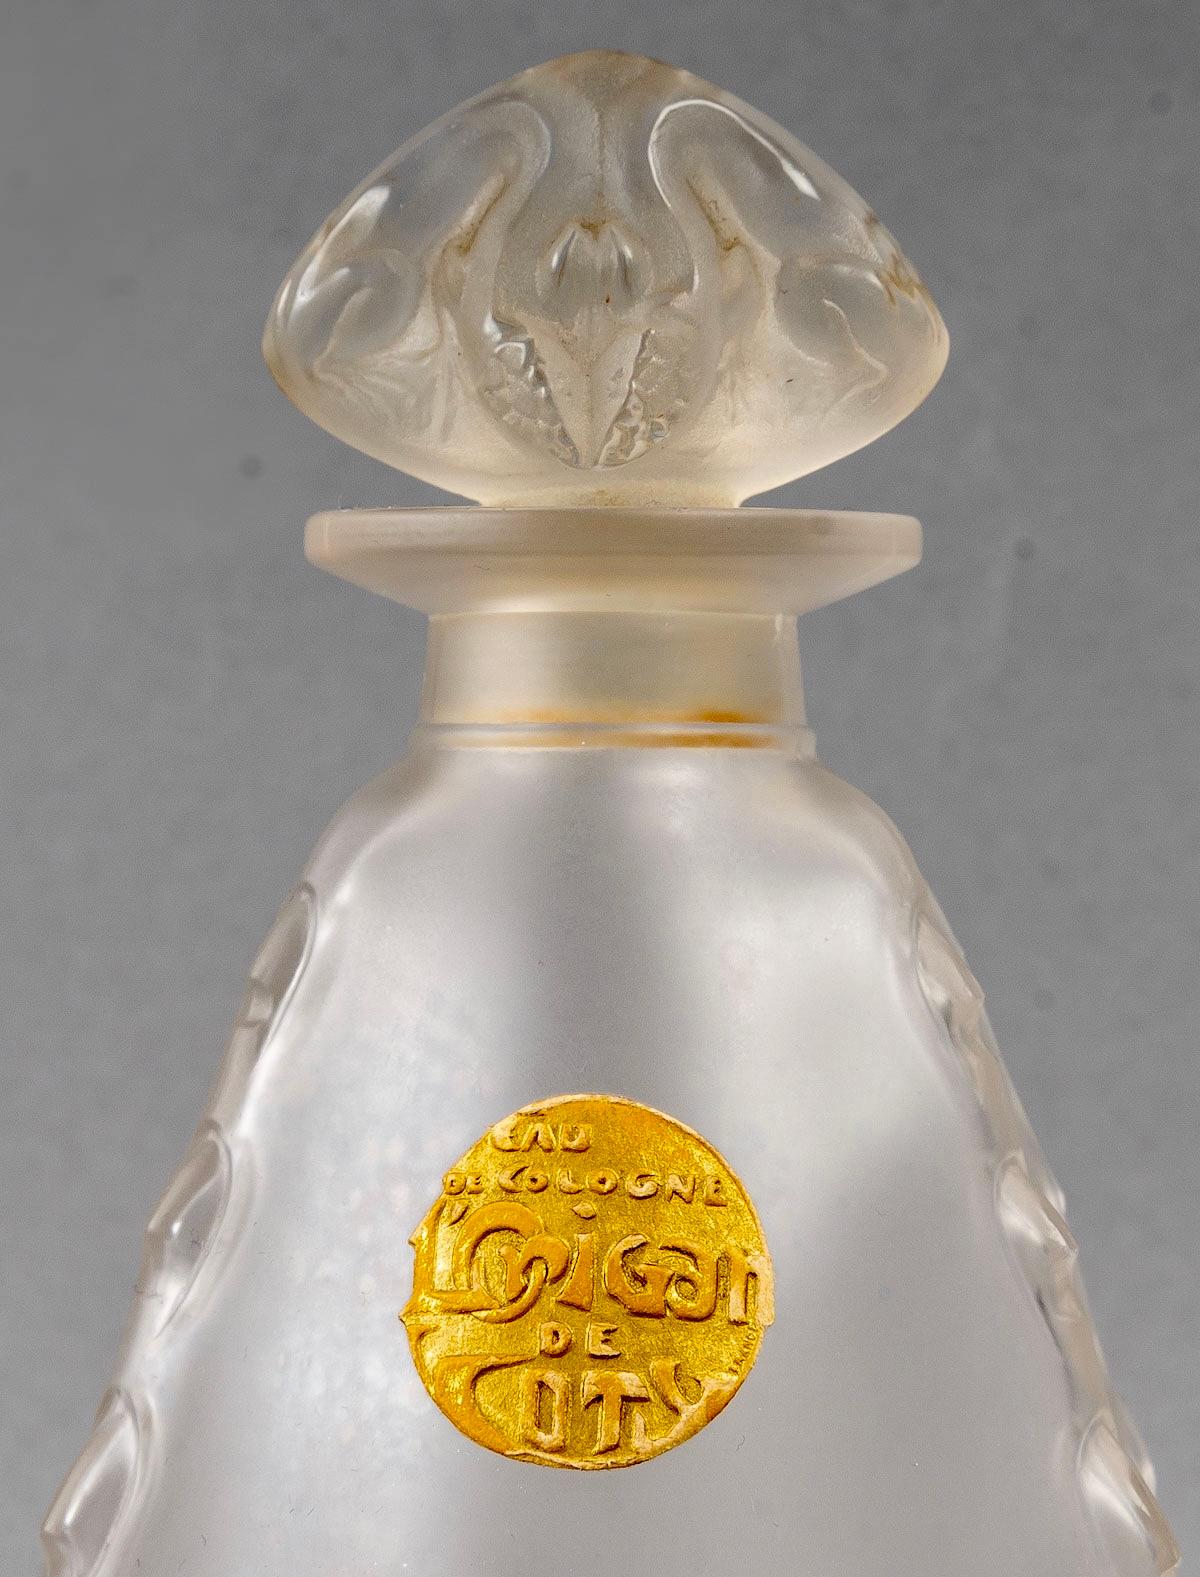 lalique perfume bottle 1930